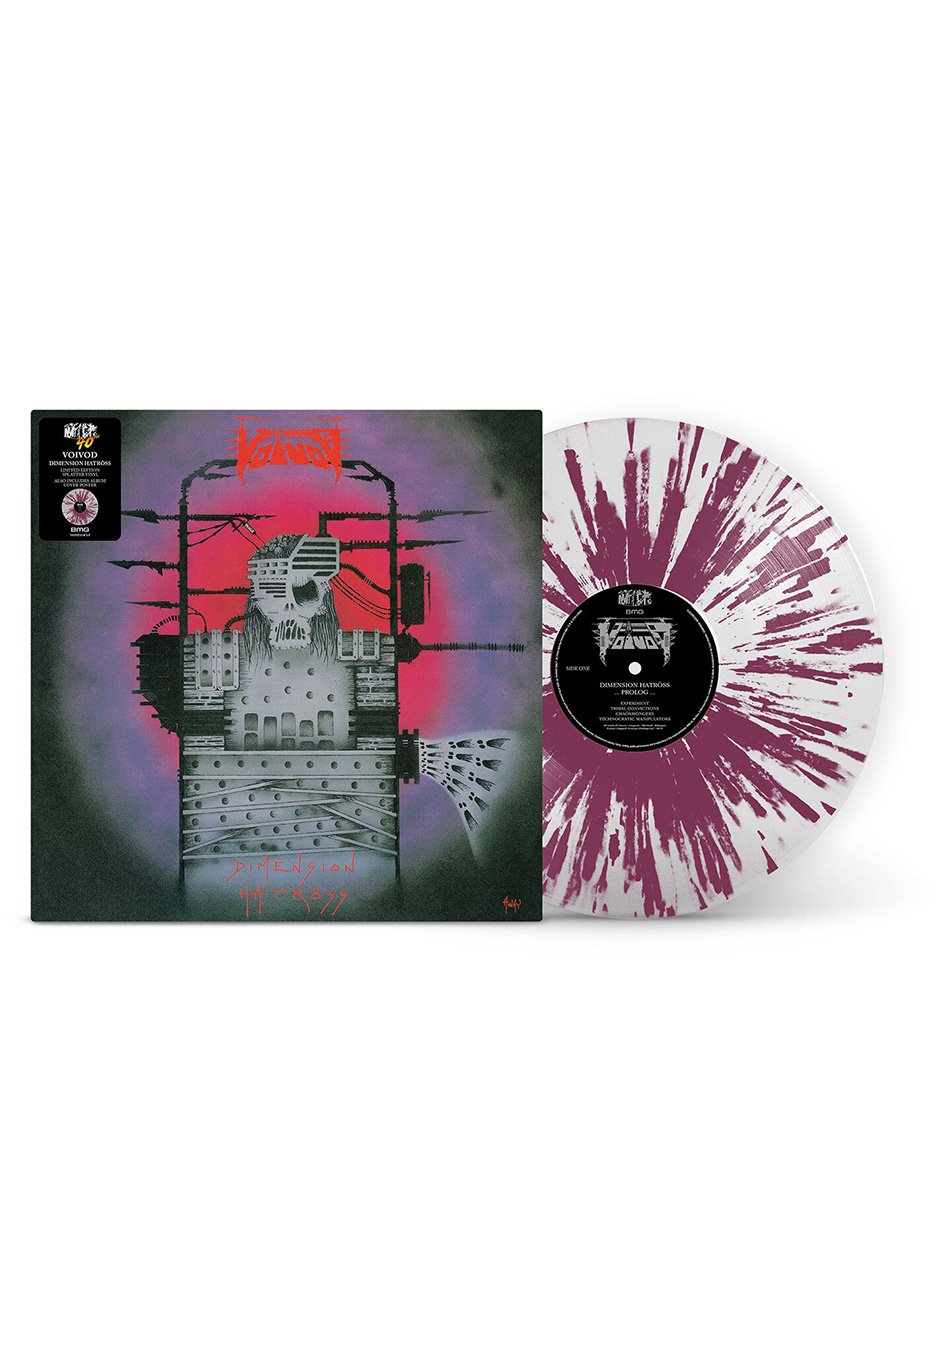 Voivod - Dimension Hatröss Ltd. White w/ Pink Splatter - Colored Vinyl